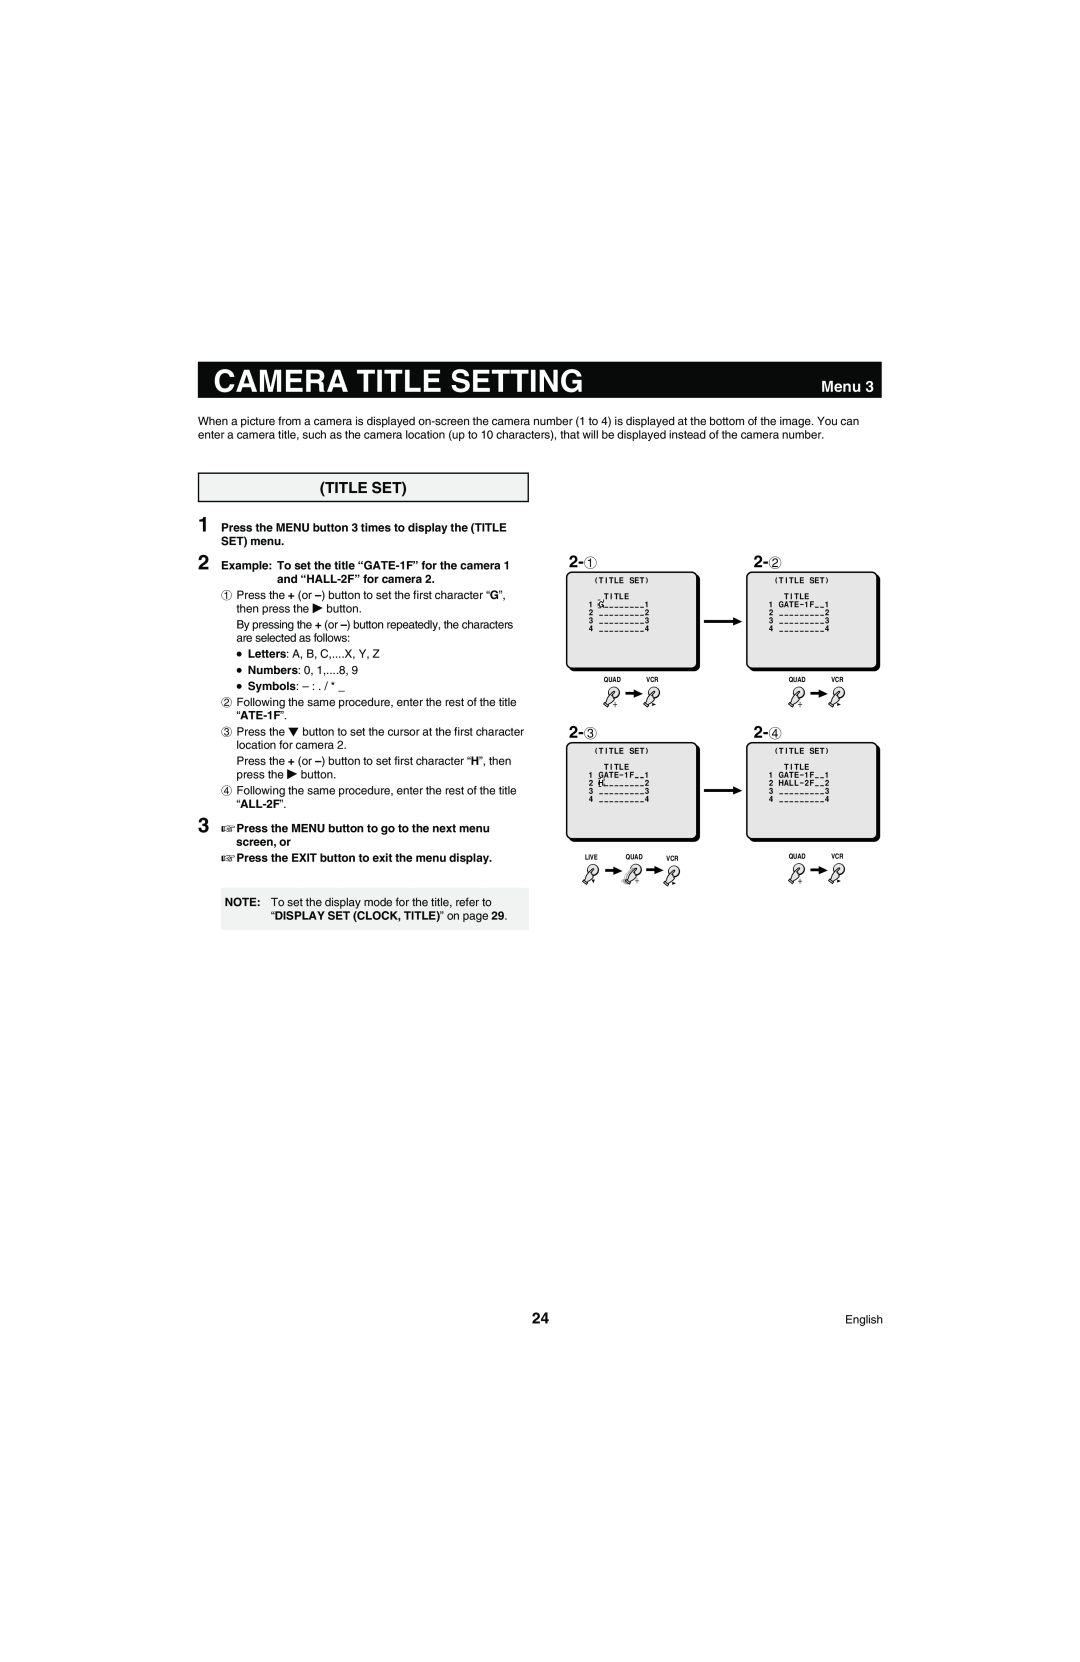 Sanyo MPX-MD4 instruction manual Camera Title Setting, Menu 